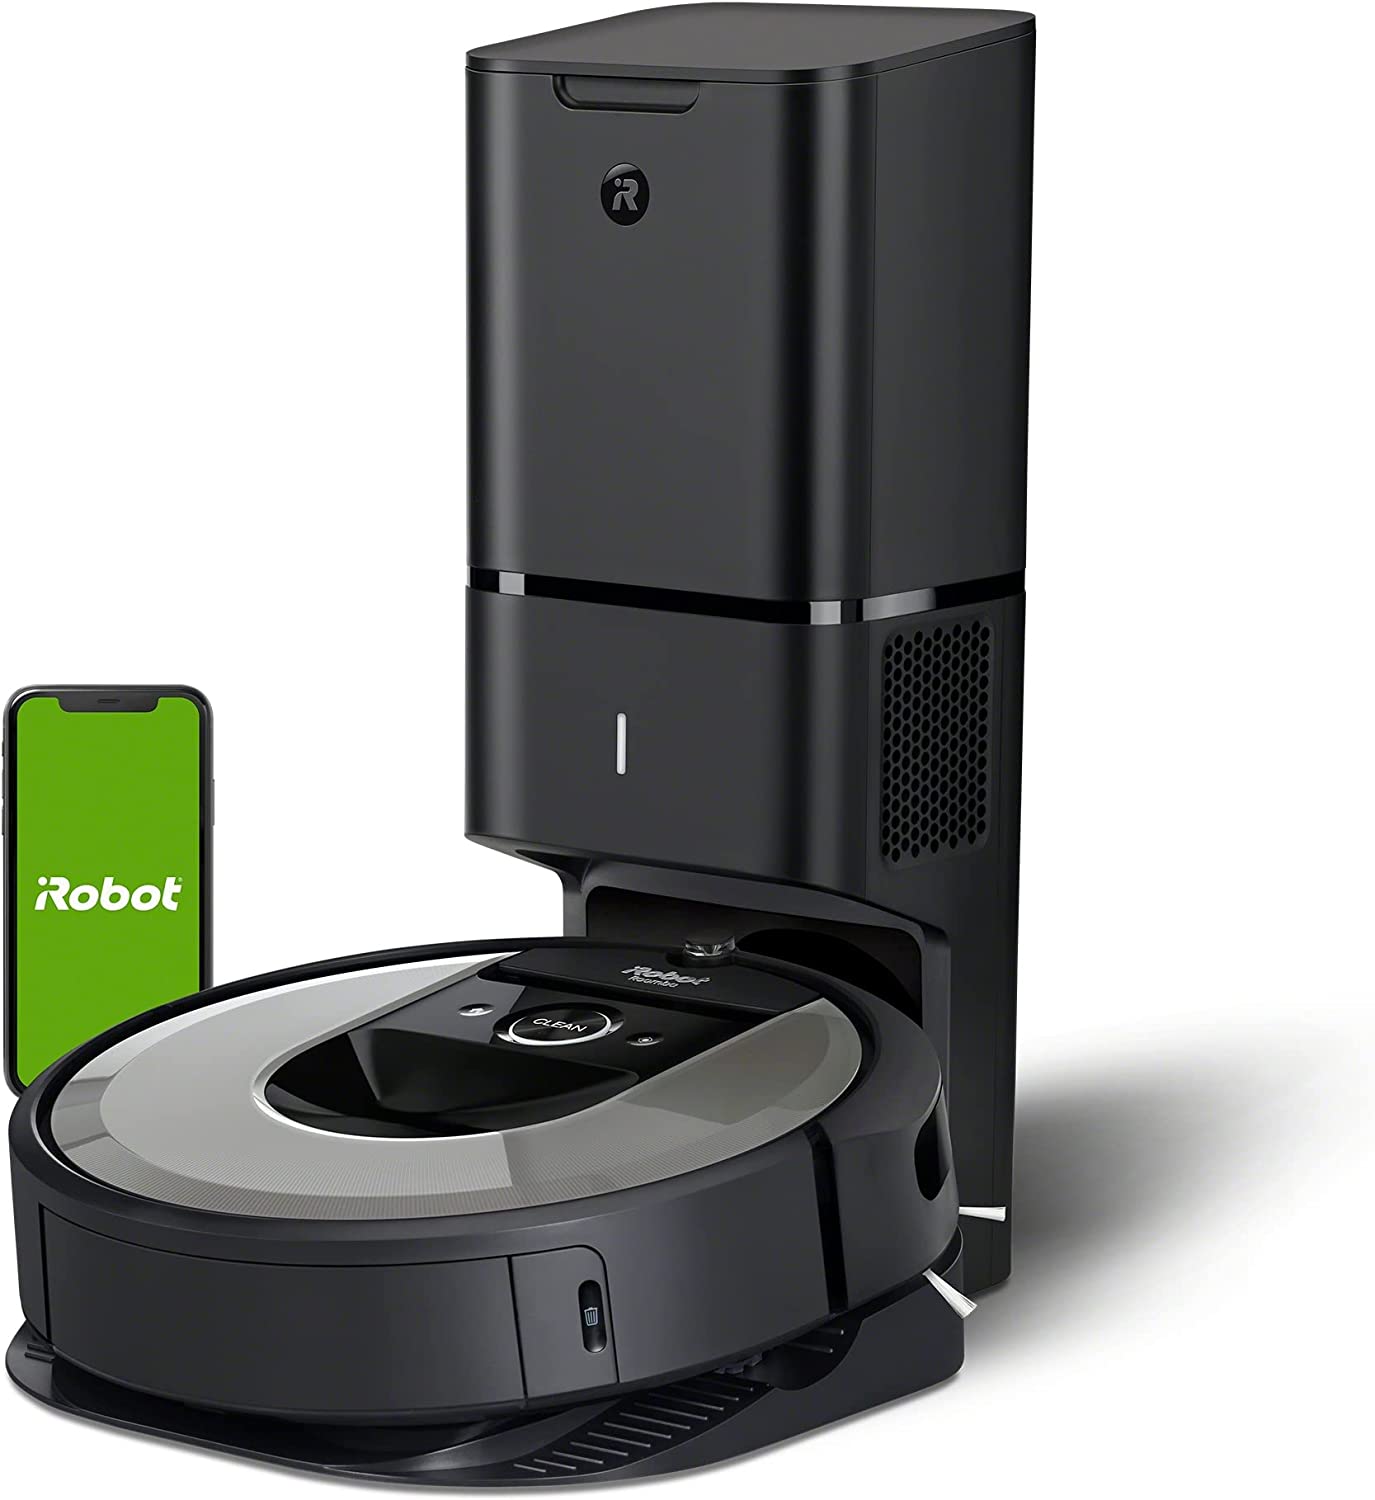 Roomba i7+ vs Roomba i5+ vs Roomba i3+